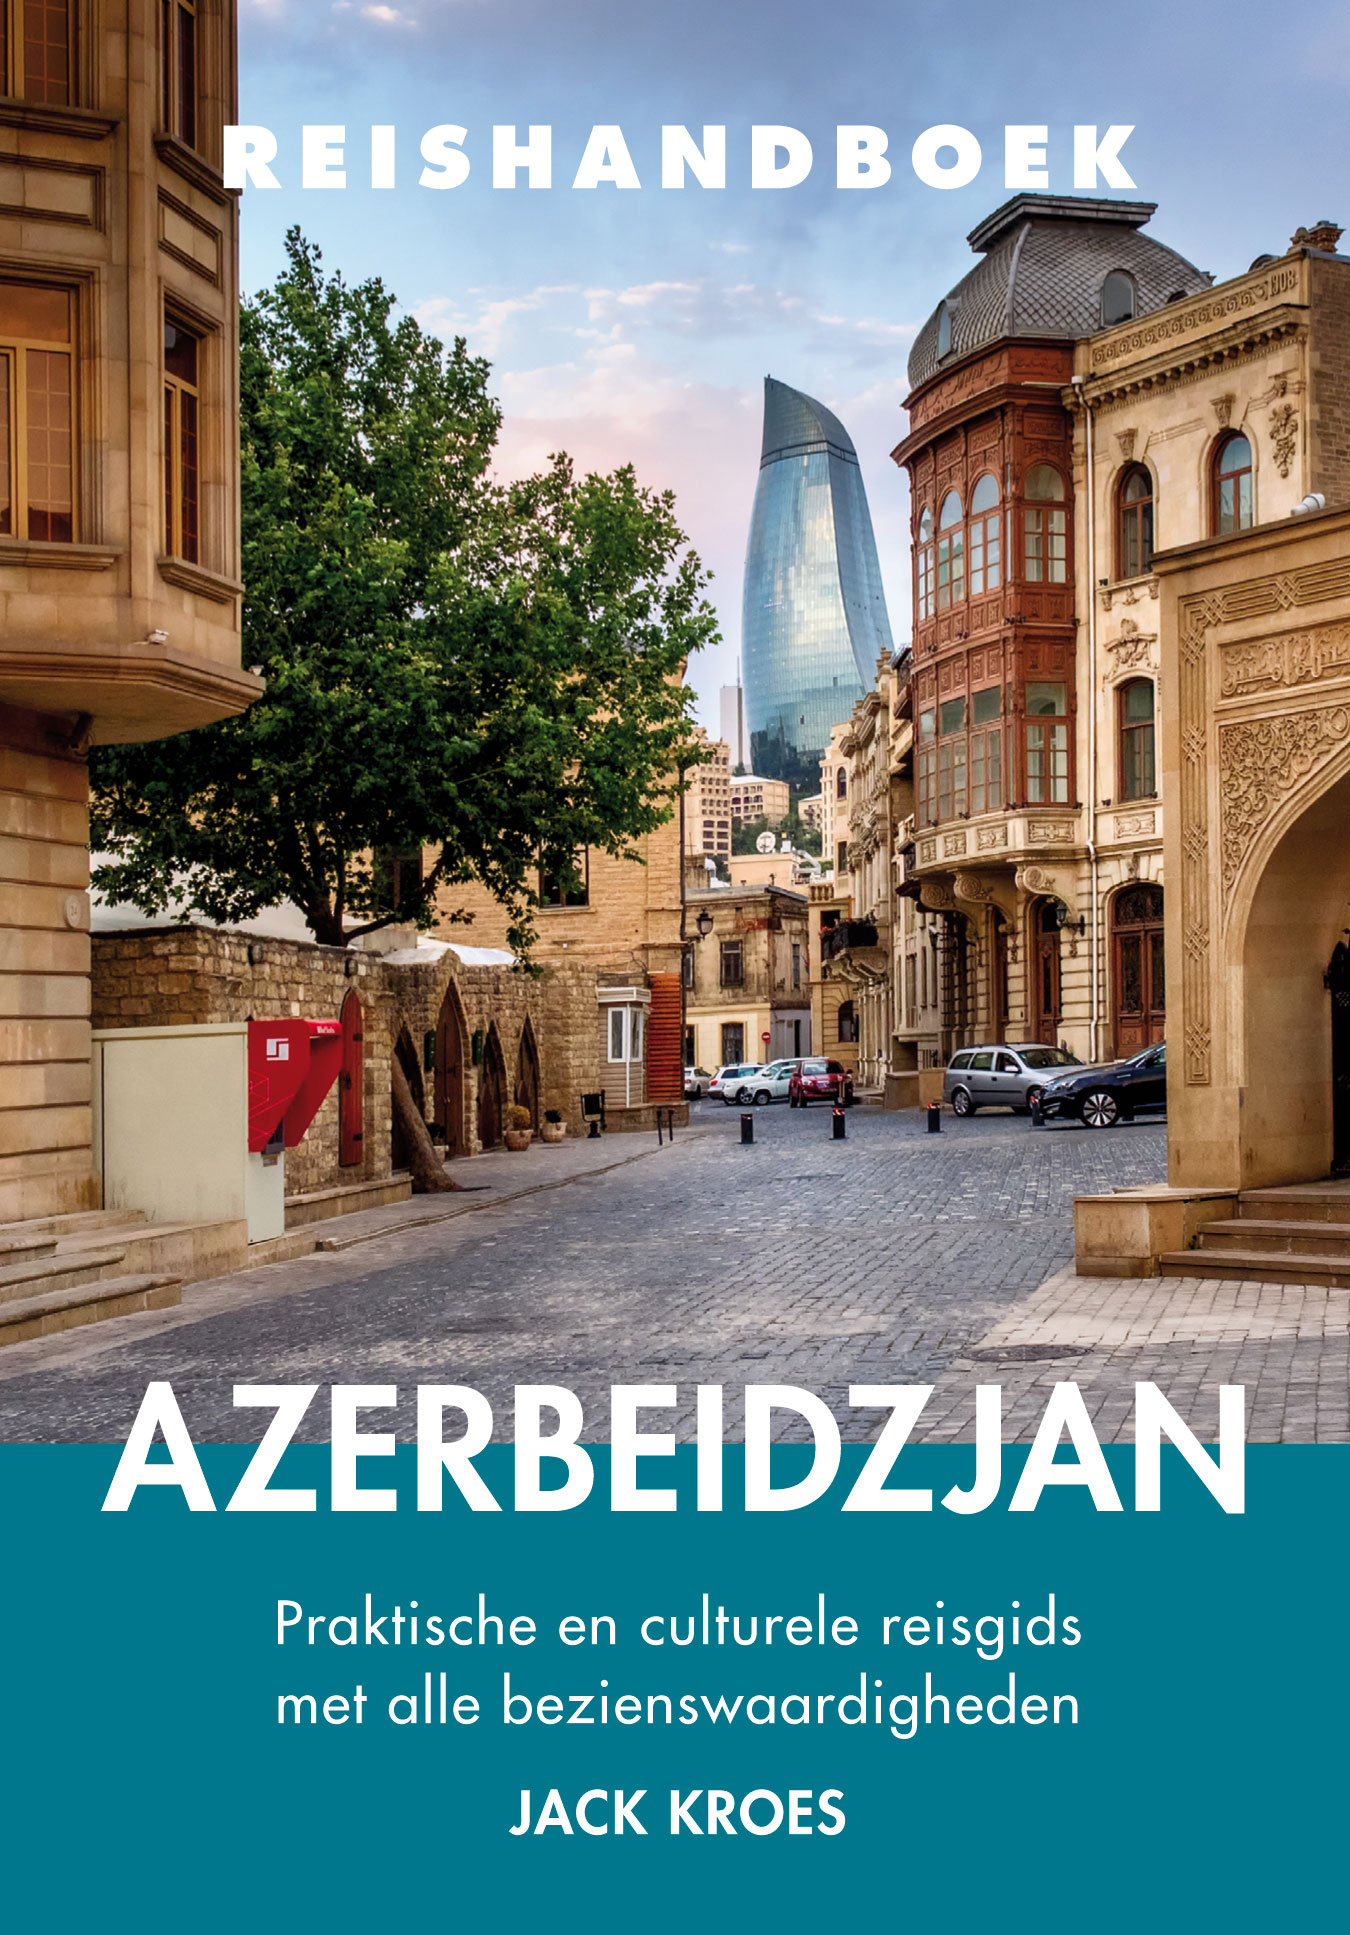 Online bestellen: Reisgids Reishandboek Azerbeidzjan | Uitgeverij Elmar